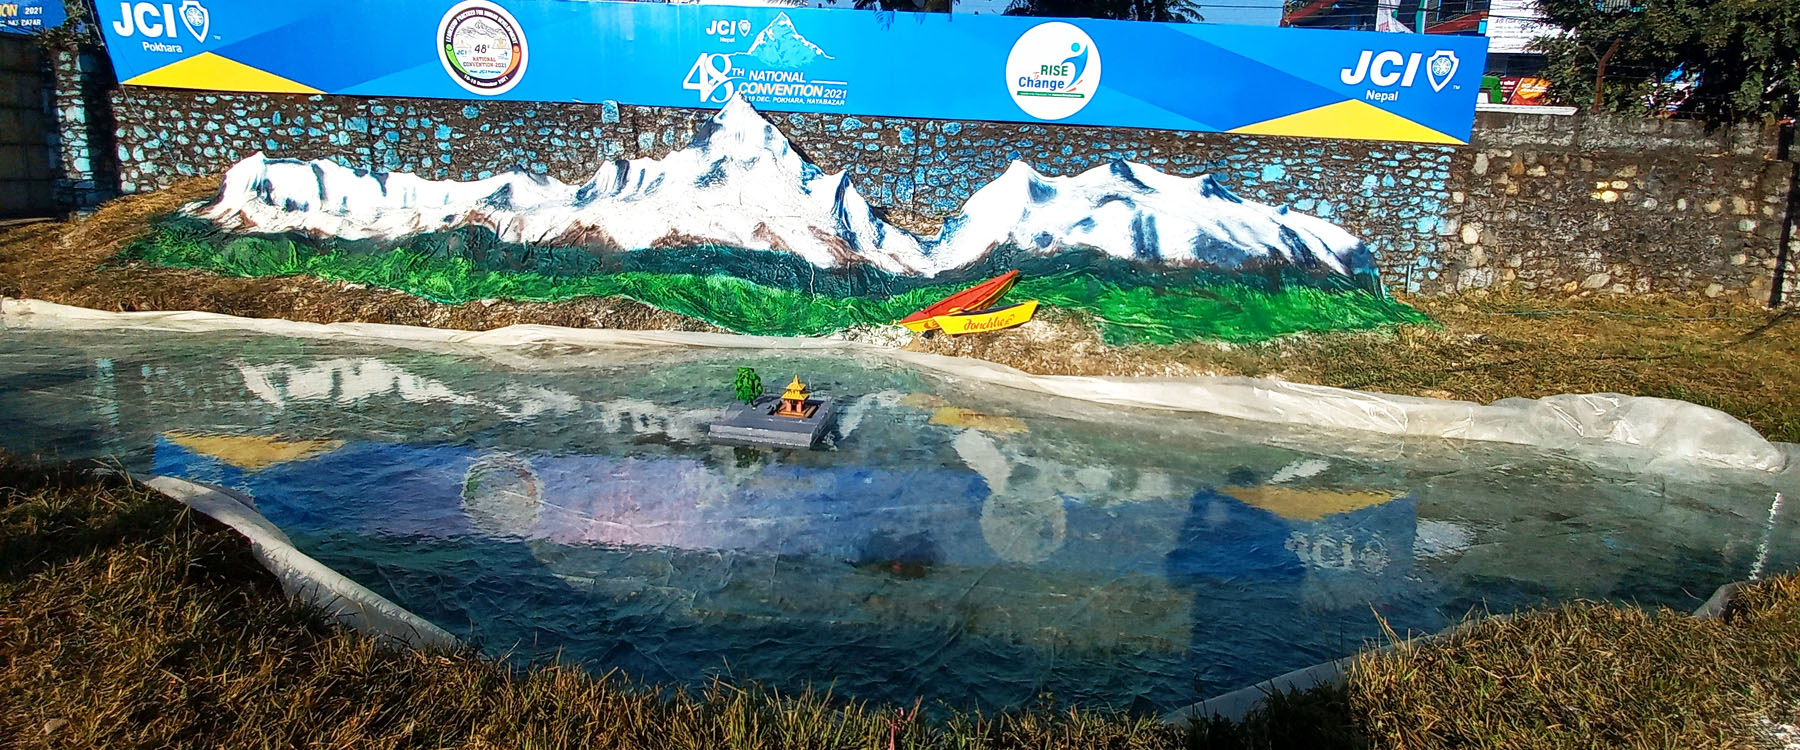 नेपाल जेसीजको पोखरामा आगामी पुस १ देखि ४ गतेसम्म आयोजना हुने ४८औँ राष्ट्रिय महाधिवेशनस्थल पोखरा प्रदर्शनी केन्द्रमा सौन्दर्यका लागि निर्माणको गरिएको हिमाल, तालसहितको पोखराको आकृति । तस्वीरः कृष्ण दवाडी, रासस